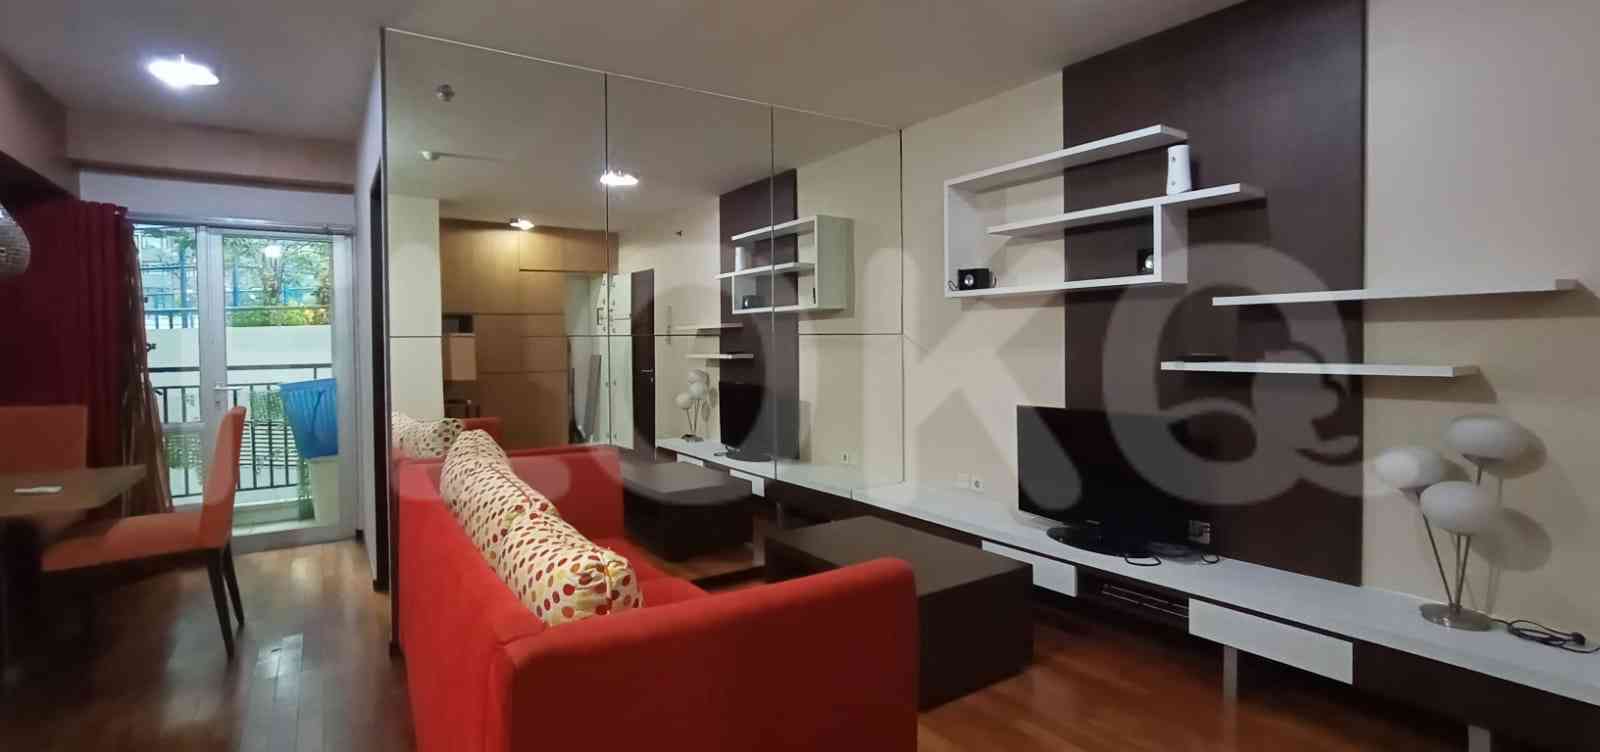 1 Bedroom on 2nd Floor for Rent in Taman Rasuna Apartment - fku2f4 5